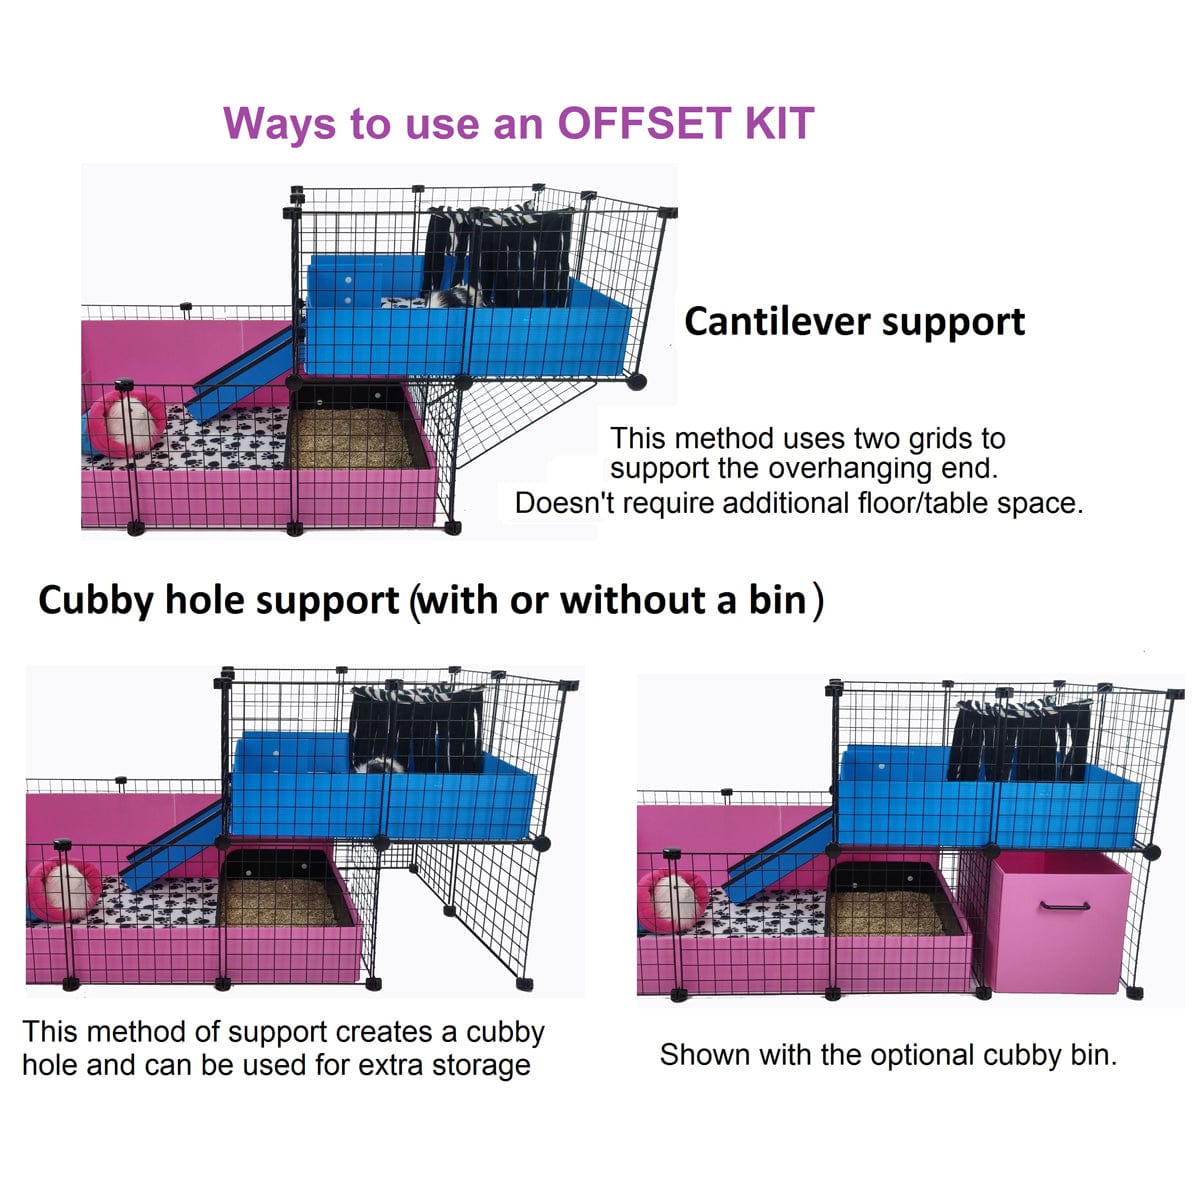 Custom C&C guinea pig cage setup to show an offset loft